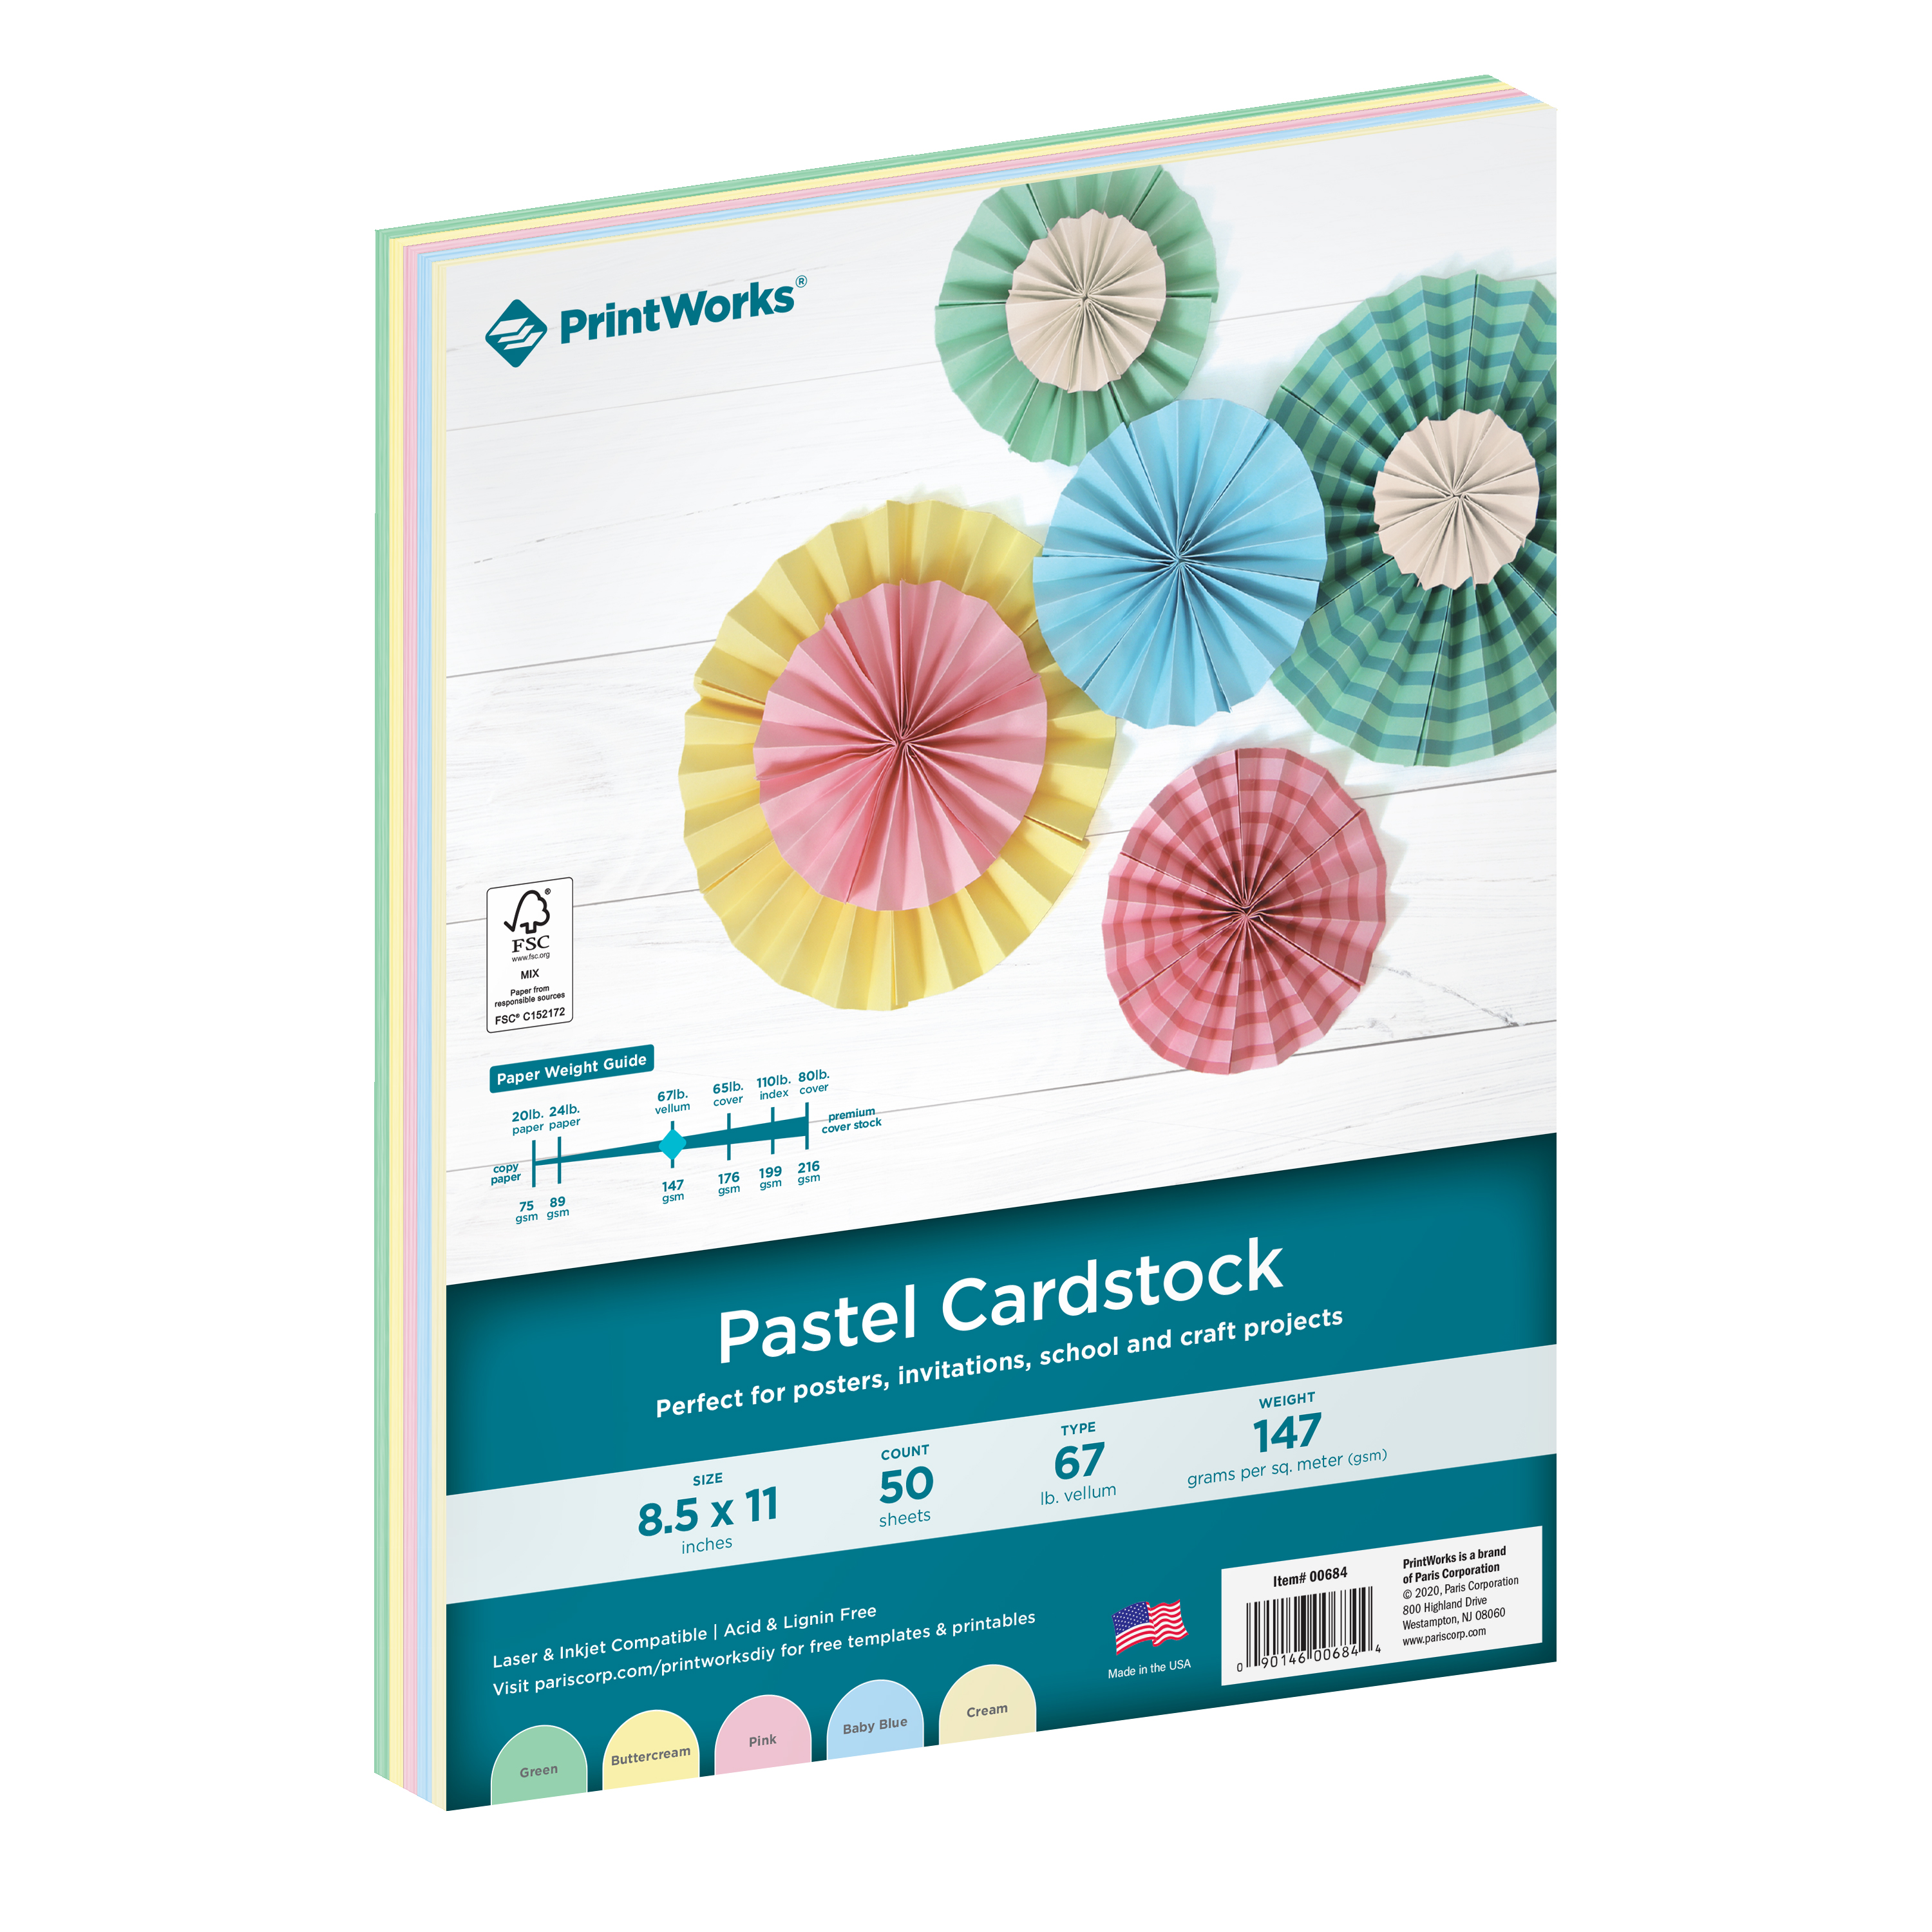 PrintWorks Pastel Cardstock